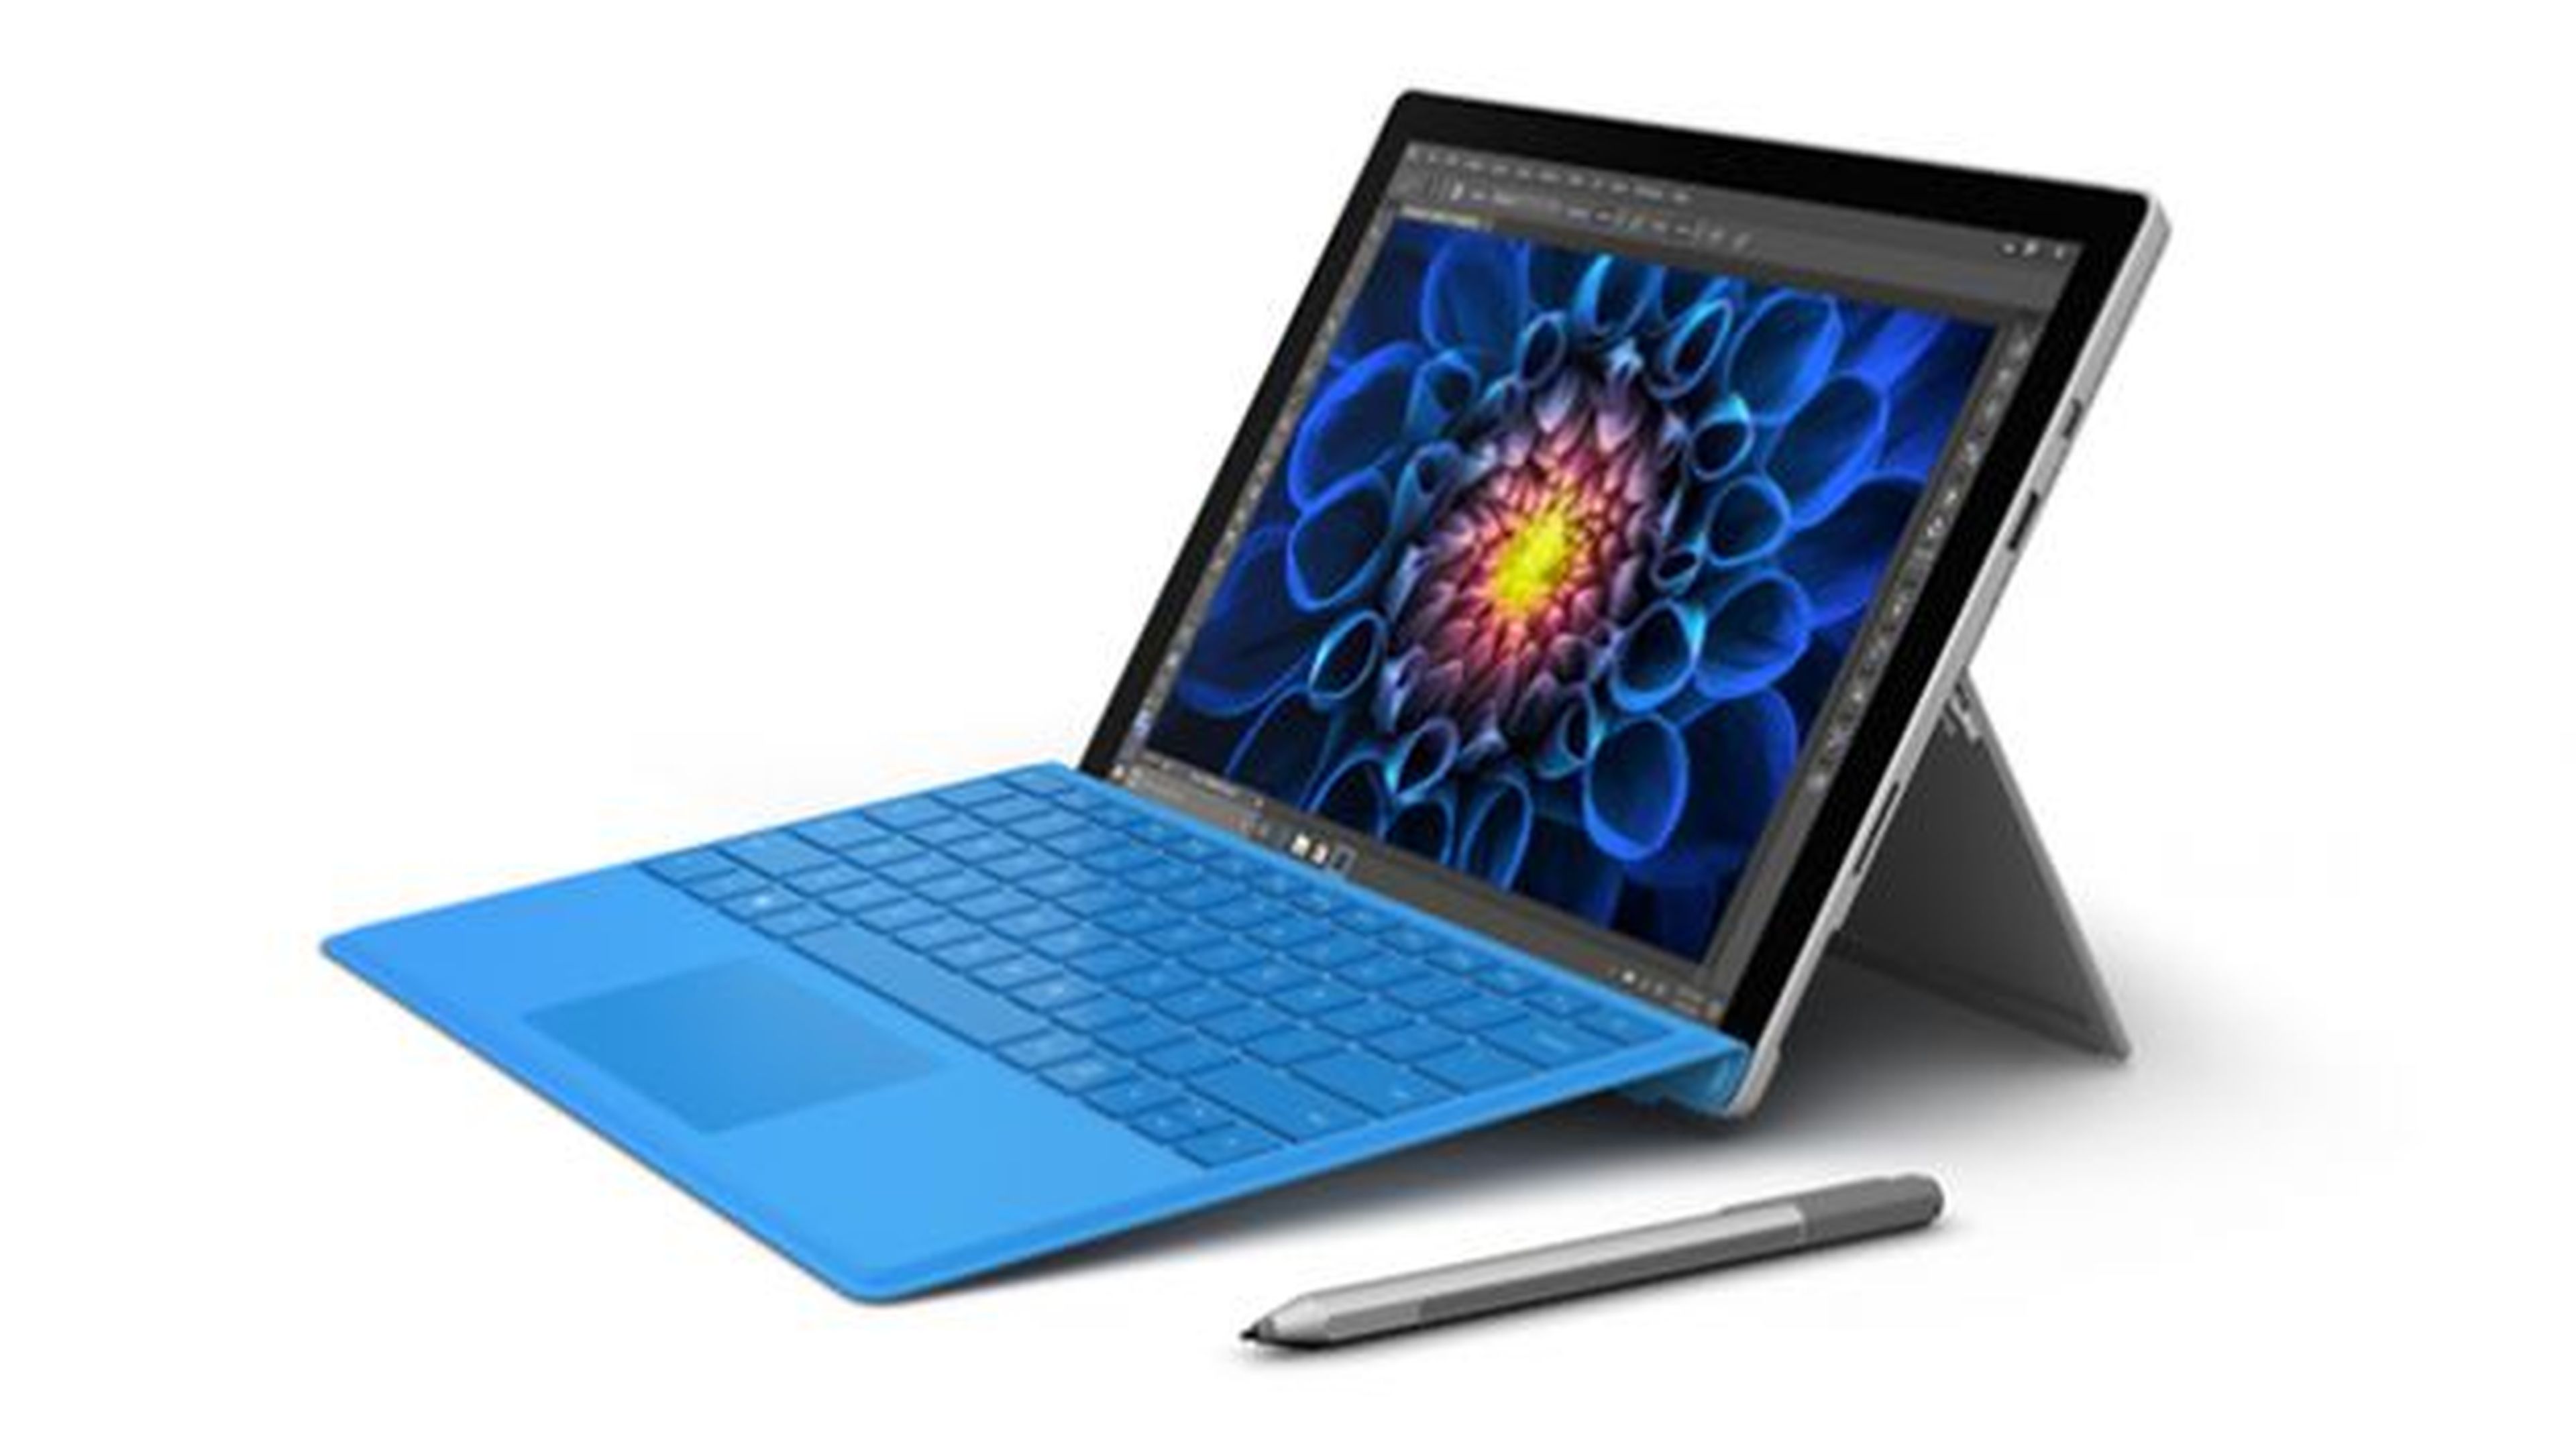 oferta especial de Microsoft Surface Pro 4 para el Black Friday